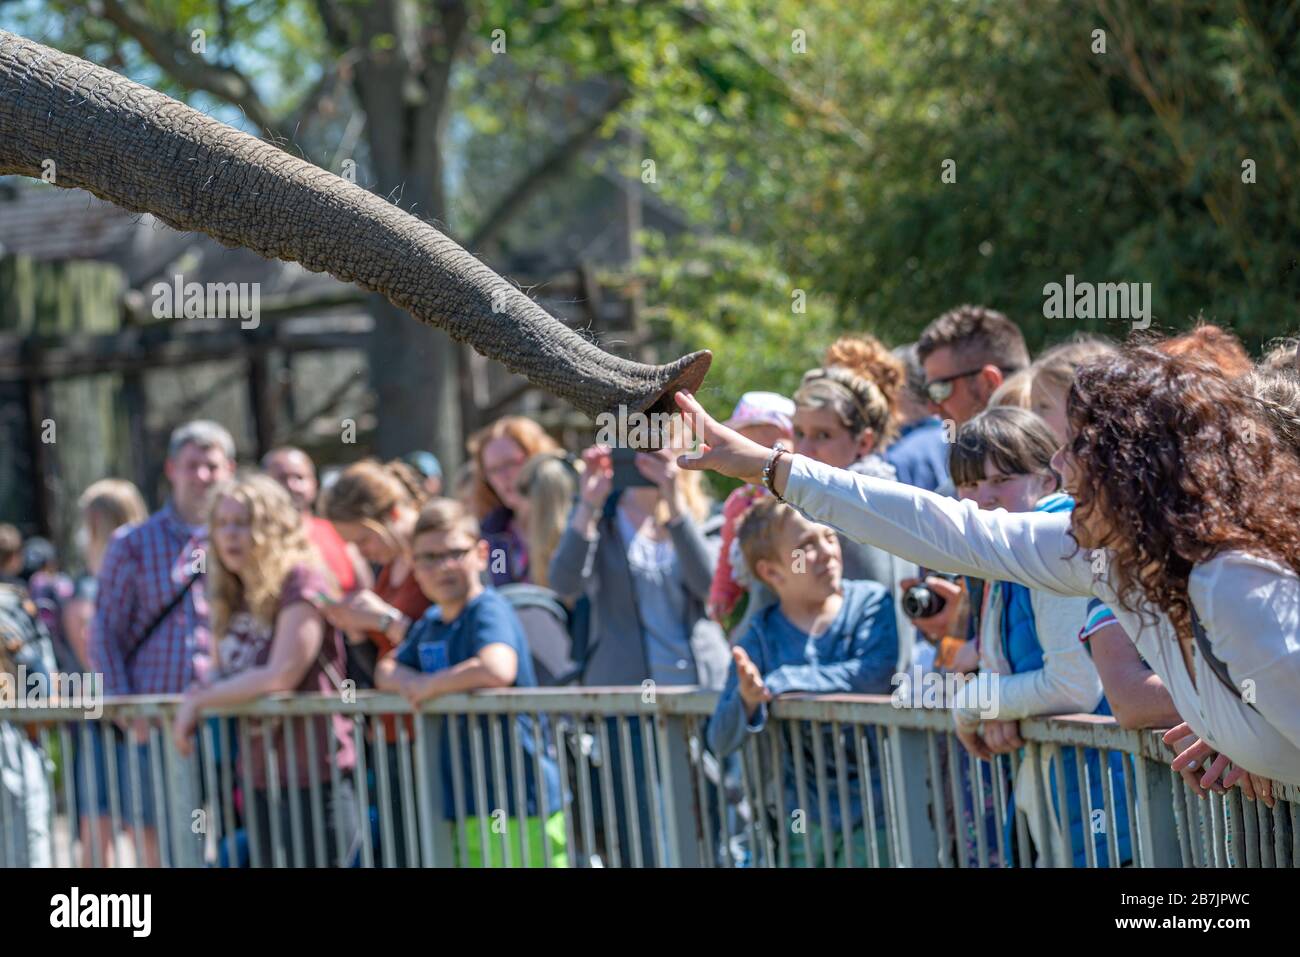 Persone e bambini interagiscono con un elefante nello zoo di Magdeburg, Magdeburg, Germania, maggio 2016 Foto Stock